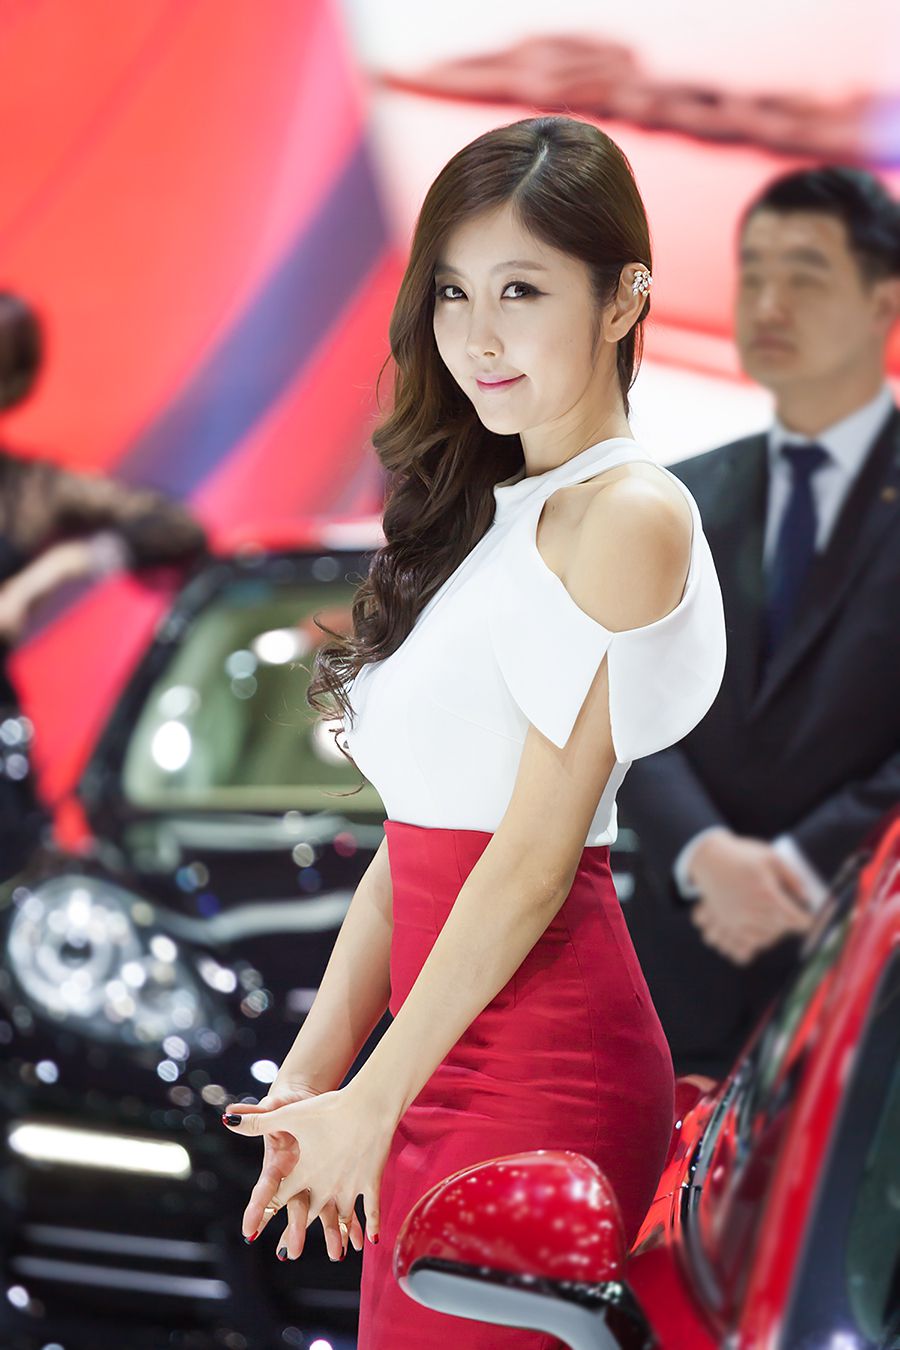 韩国车模崔星雅/崔星儿《车展红色套裙系列》图片合辑  第37张